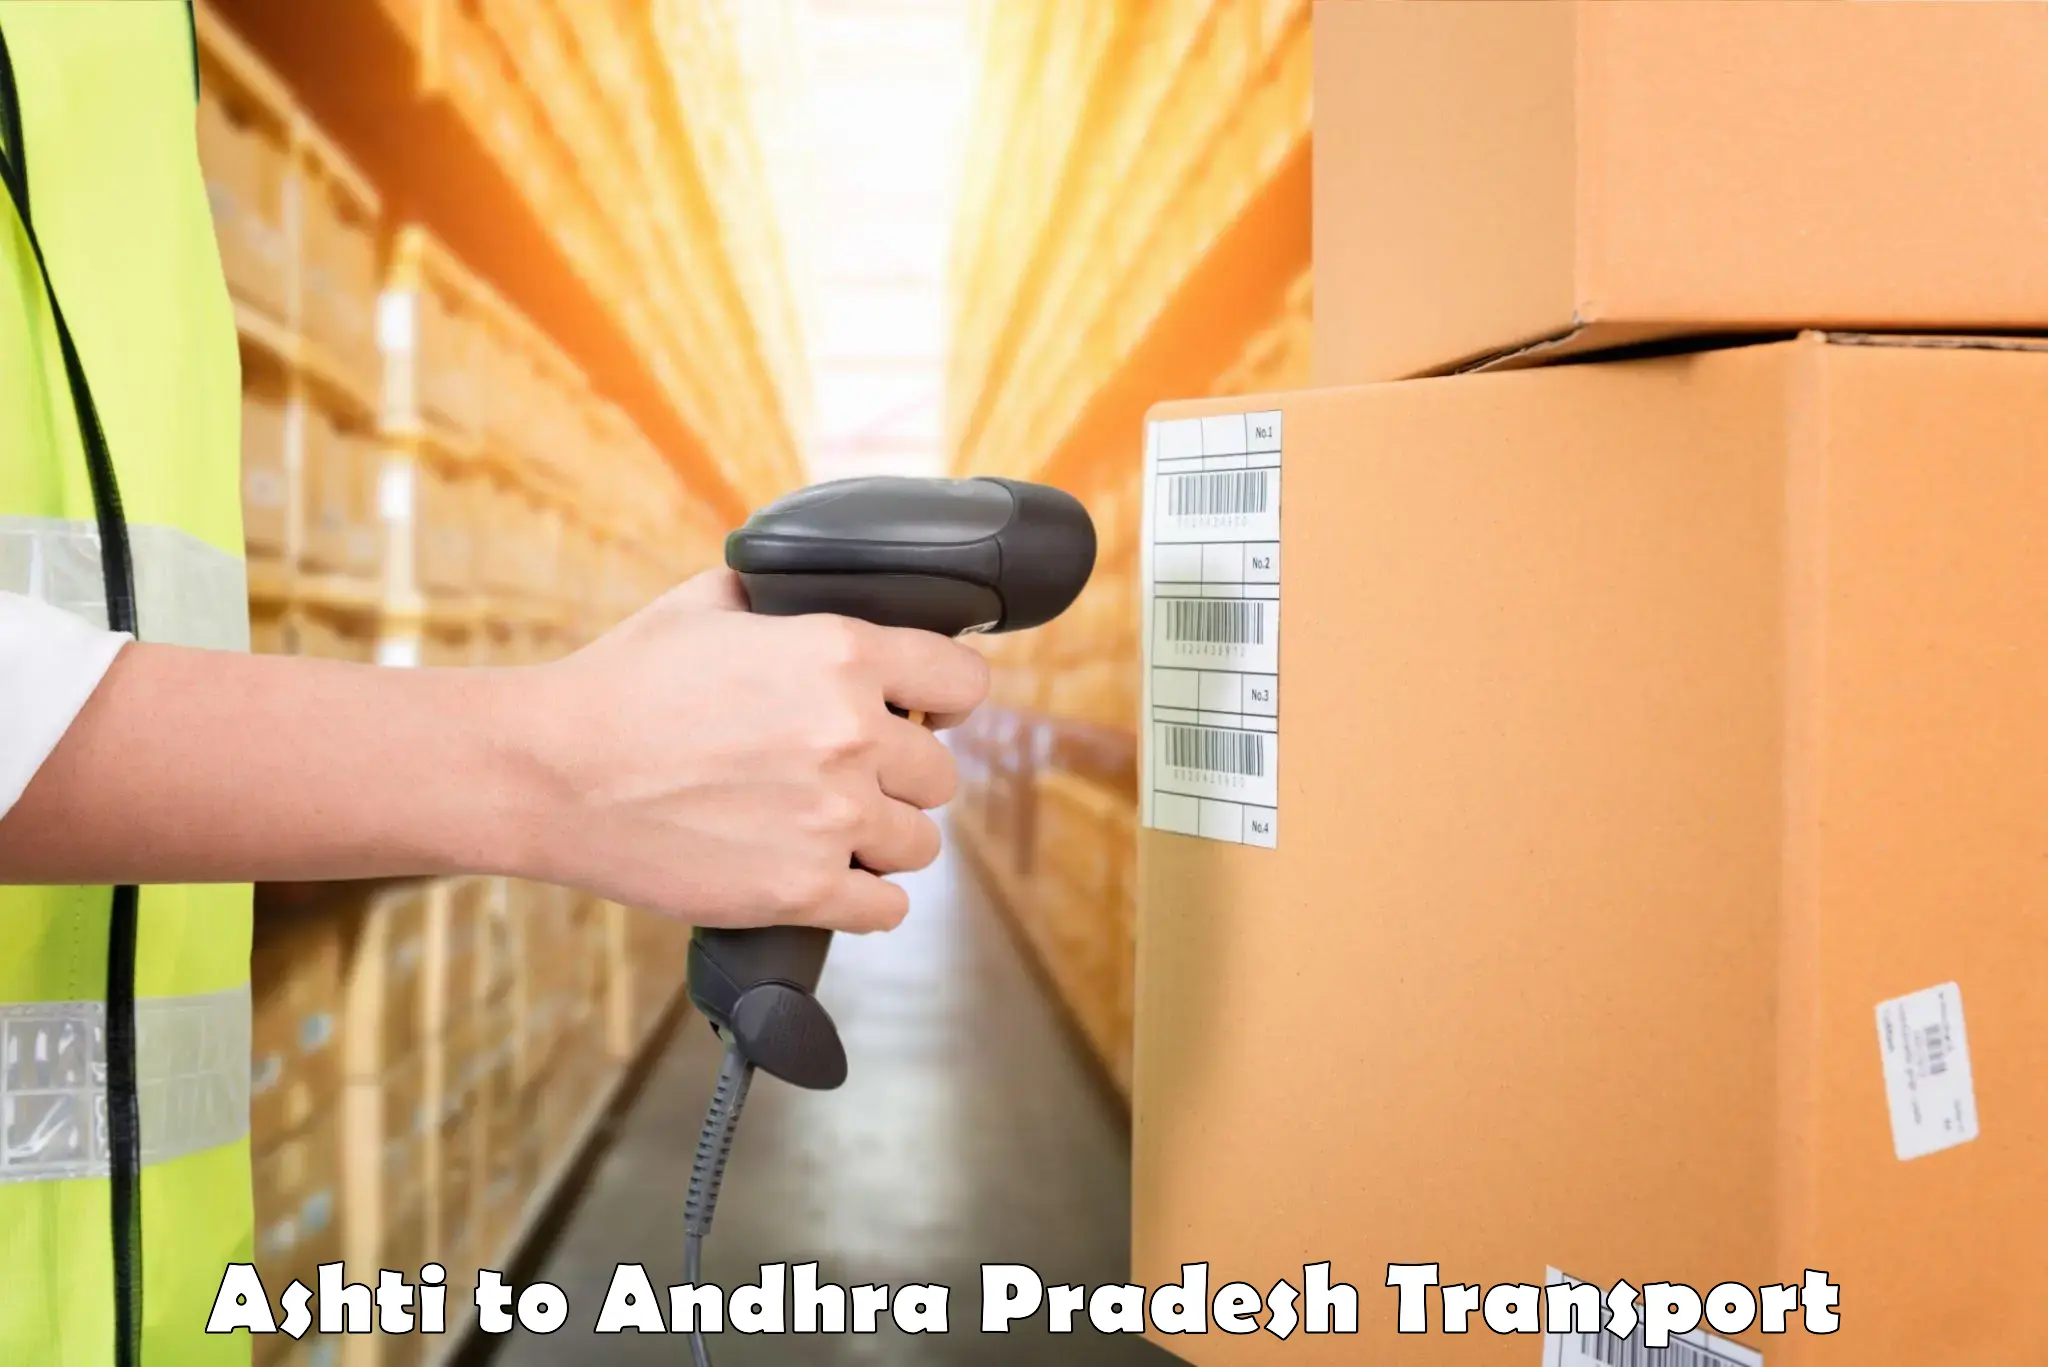 Delivery service Ashti to Andhra Pradesh